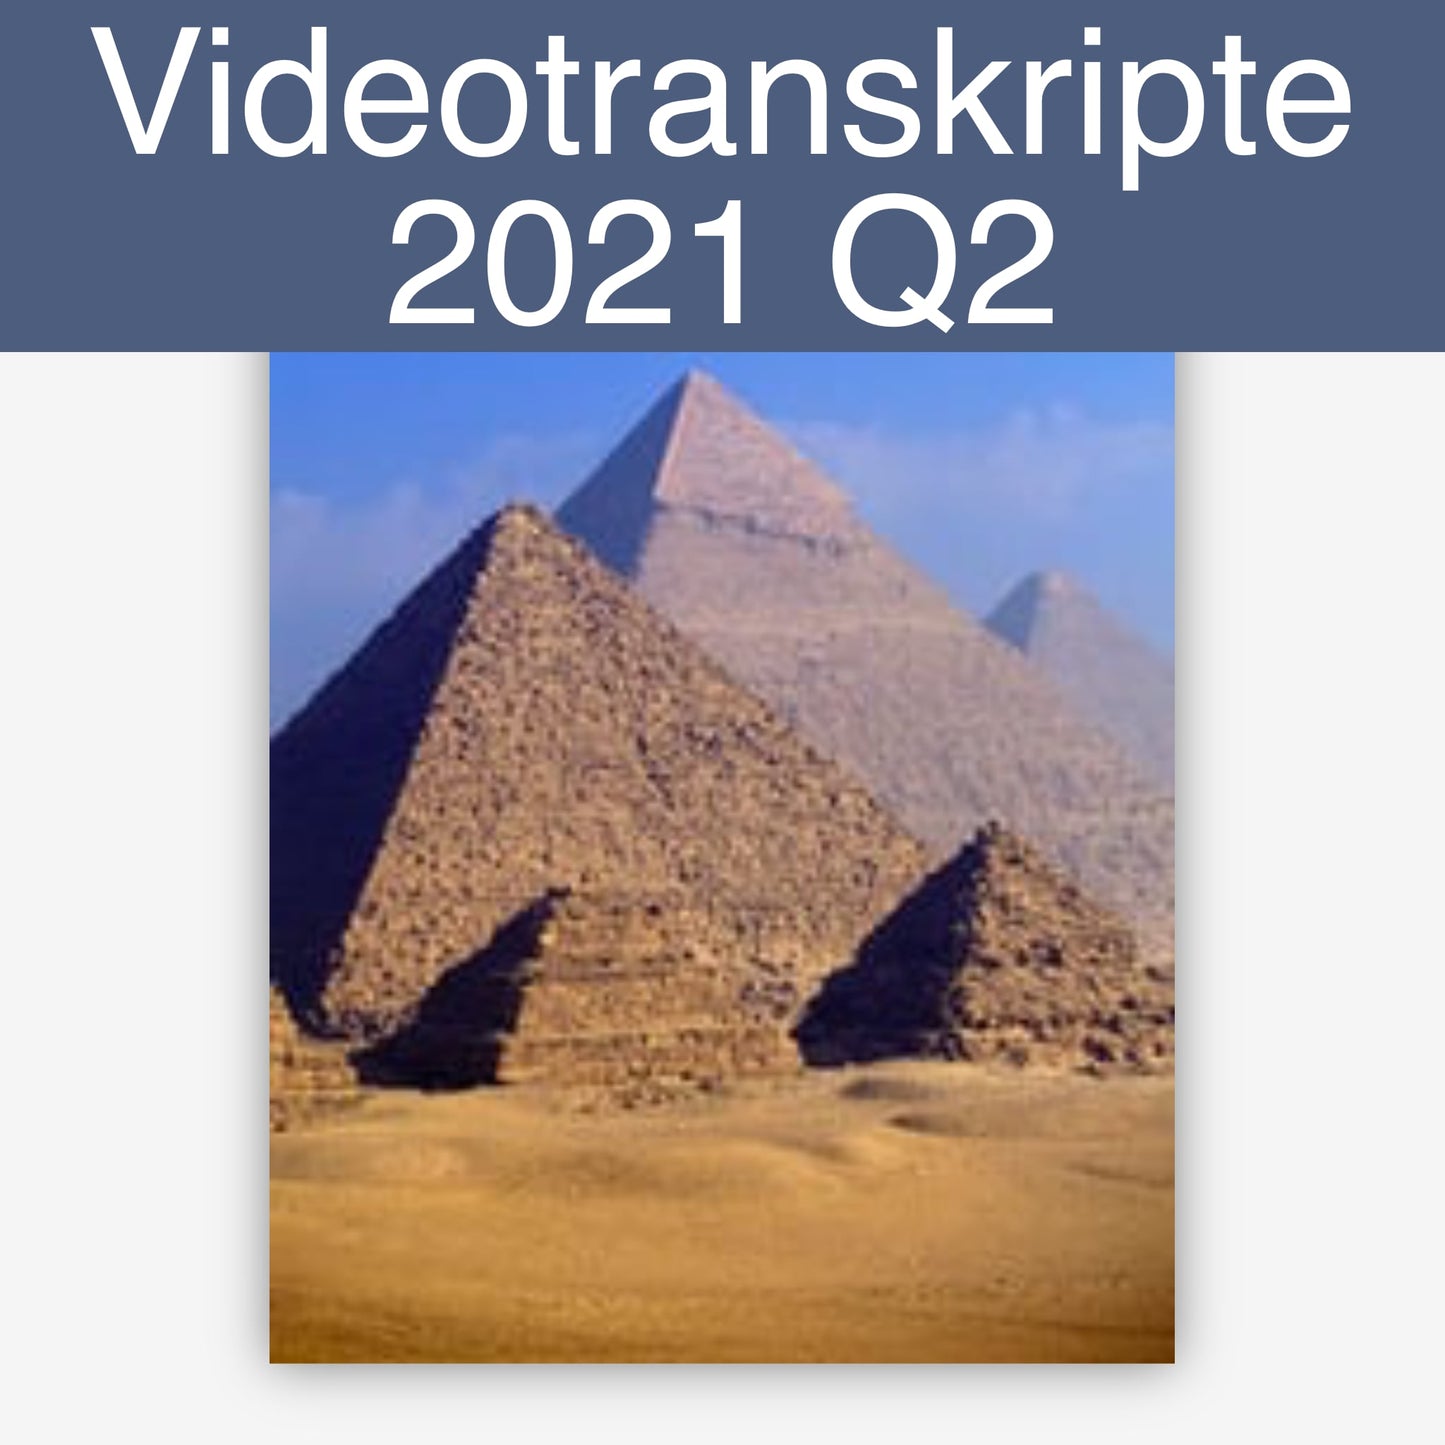 Videotranskripte 2021 Q2